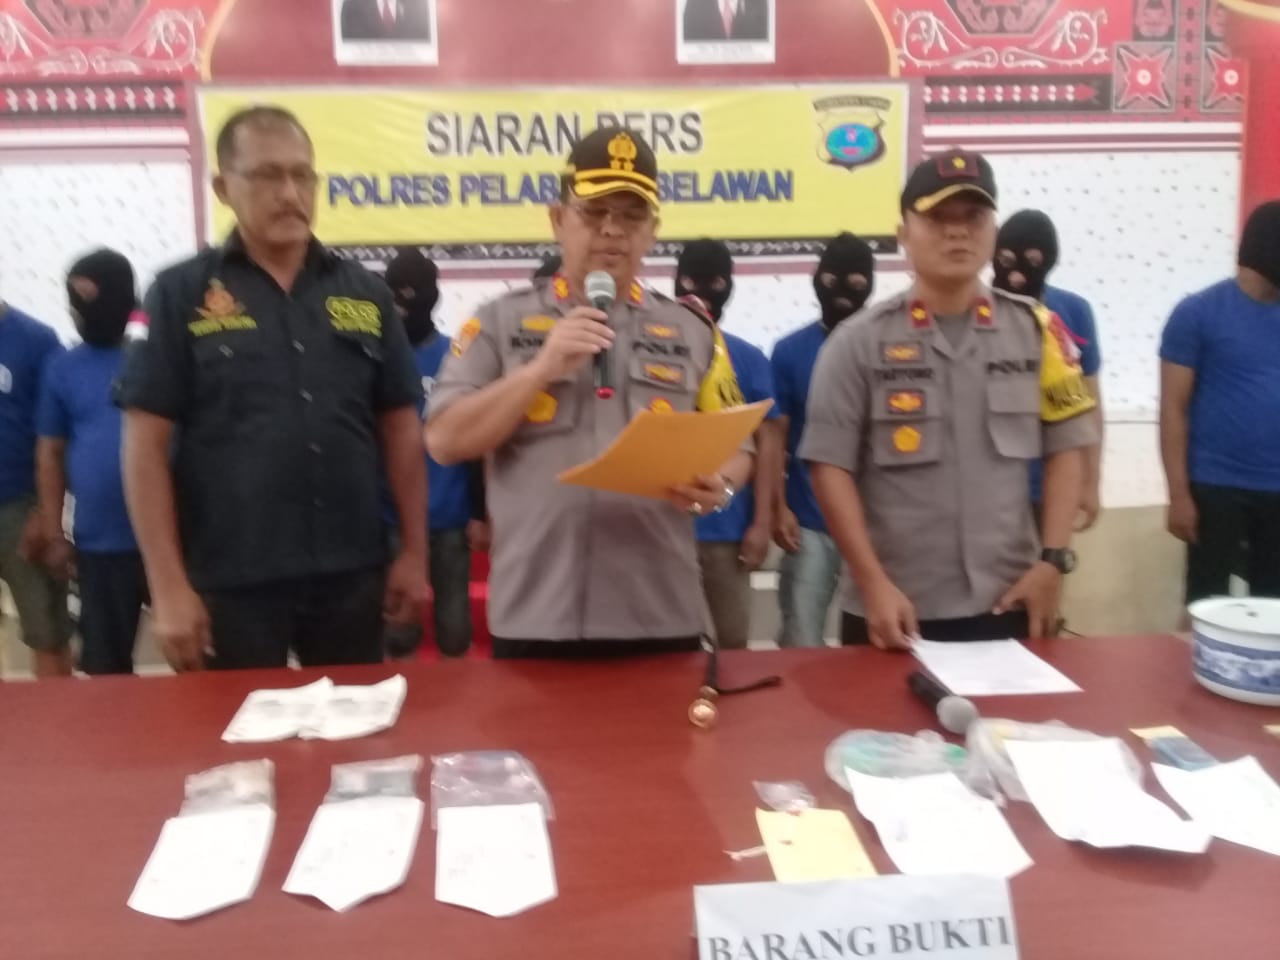 Sat Narkoba Polres Pelabuhan Belawan berhasil Ungkap Kasus Narkoba di 3 Lokasi dengan 12 Tersangka